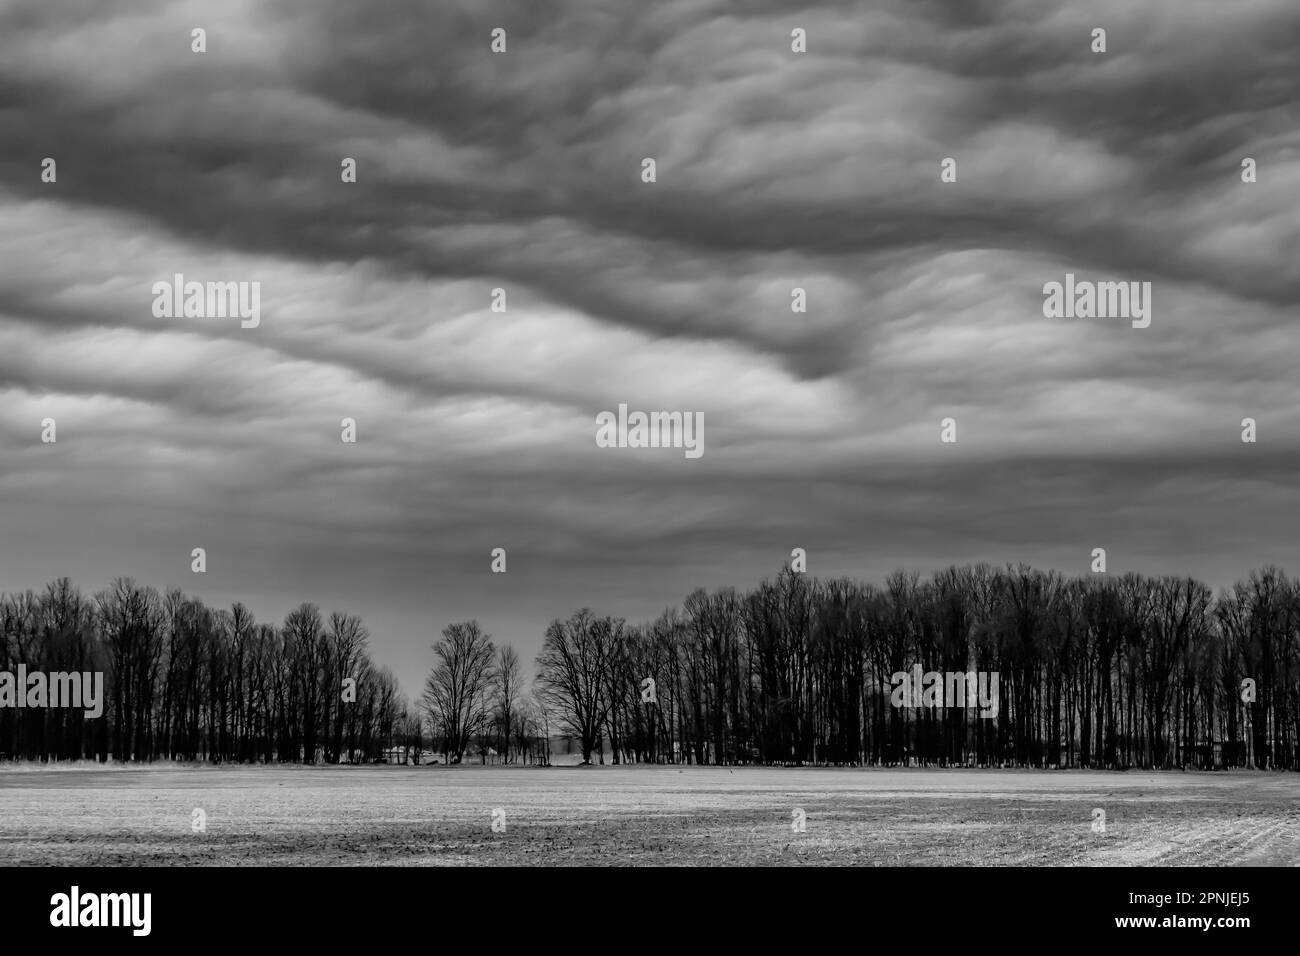 Le nuvole di stratocumuli su terreni agricoli e alberi, Michigan centrale, Stati Uniti Foto Stock